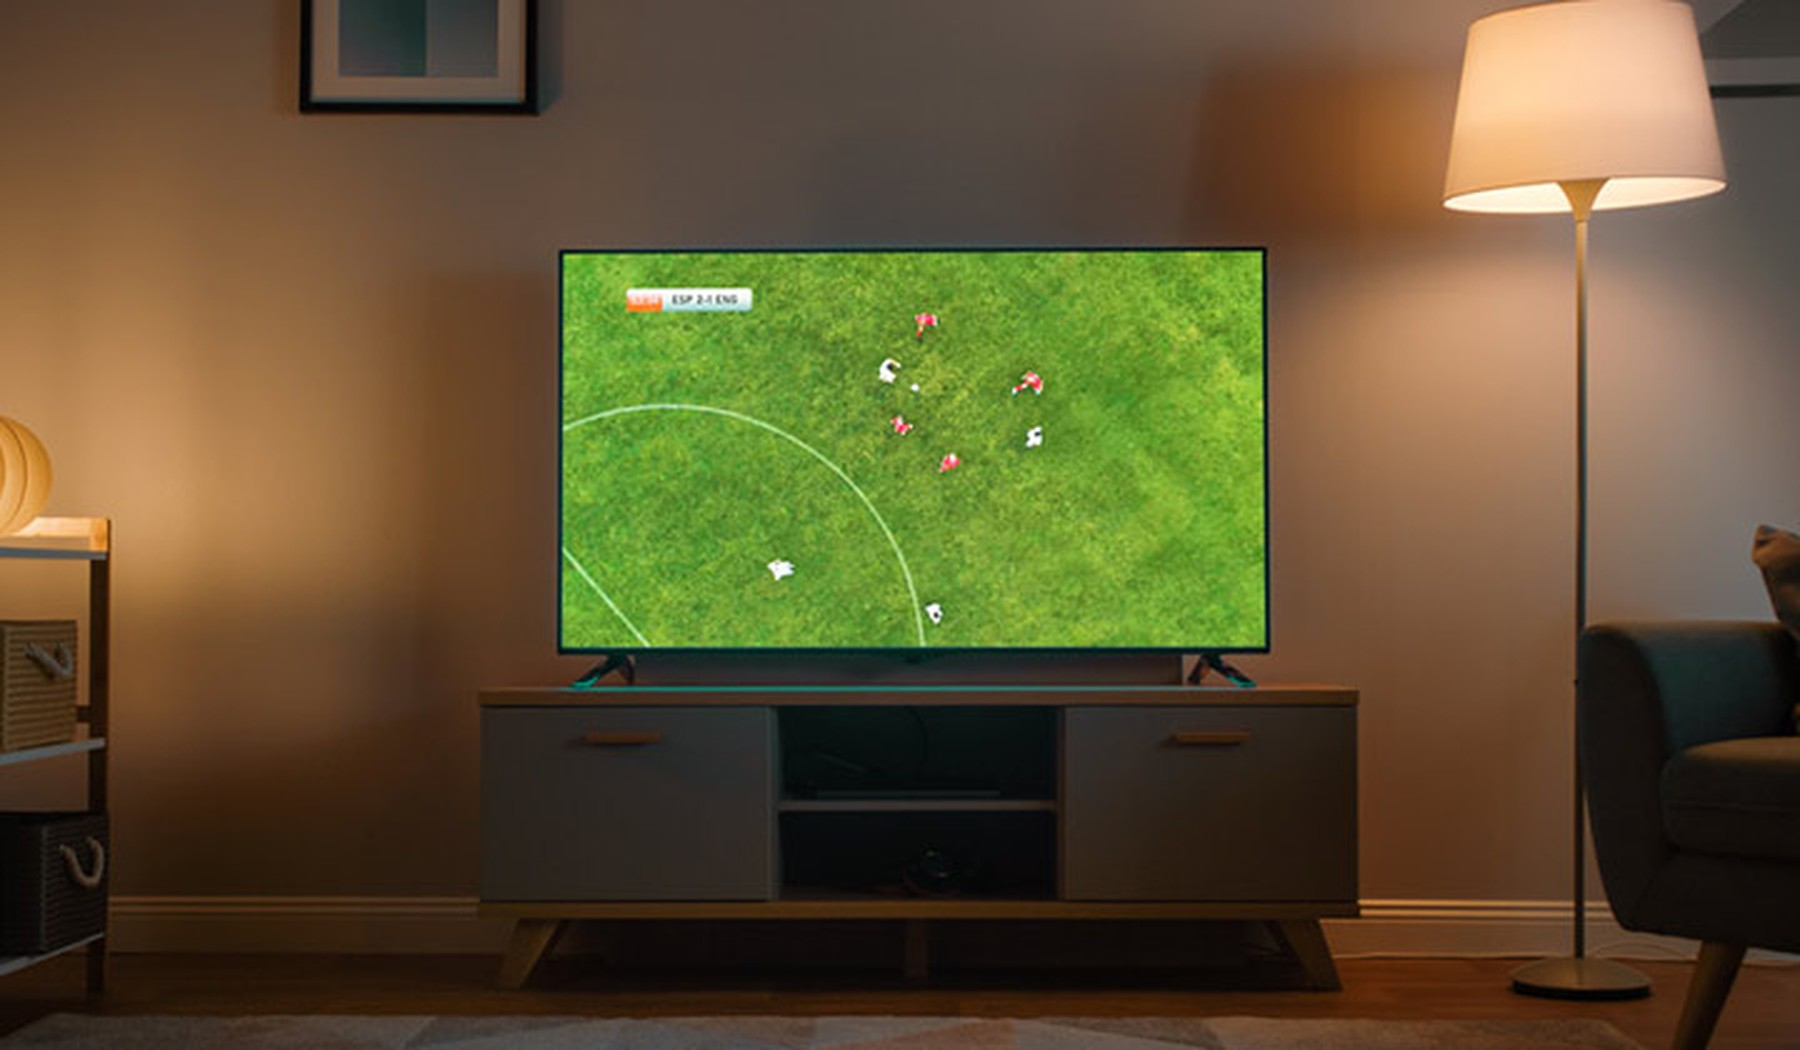 Televisión plana con un partido de fútbol en un salón con luz tenue